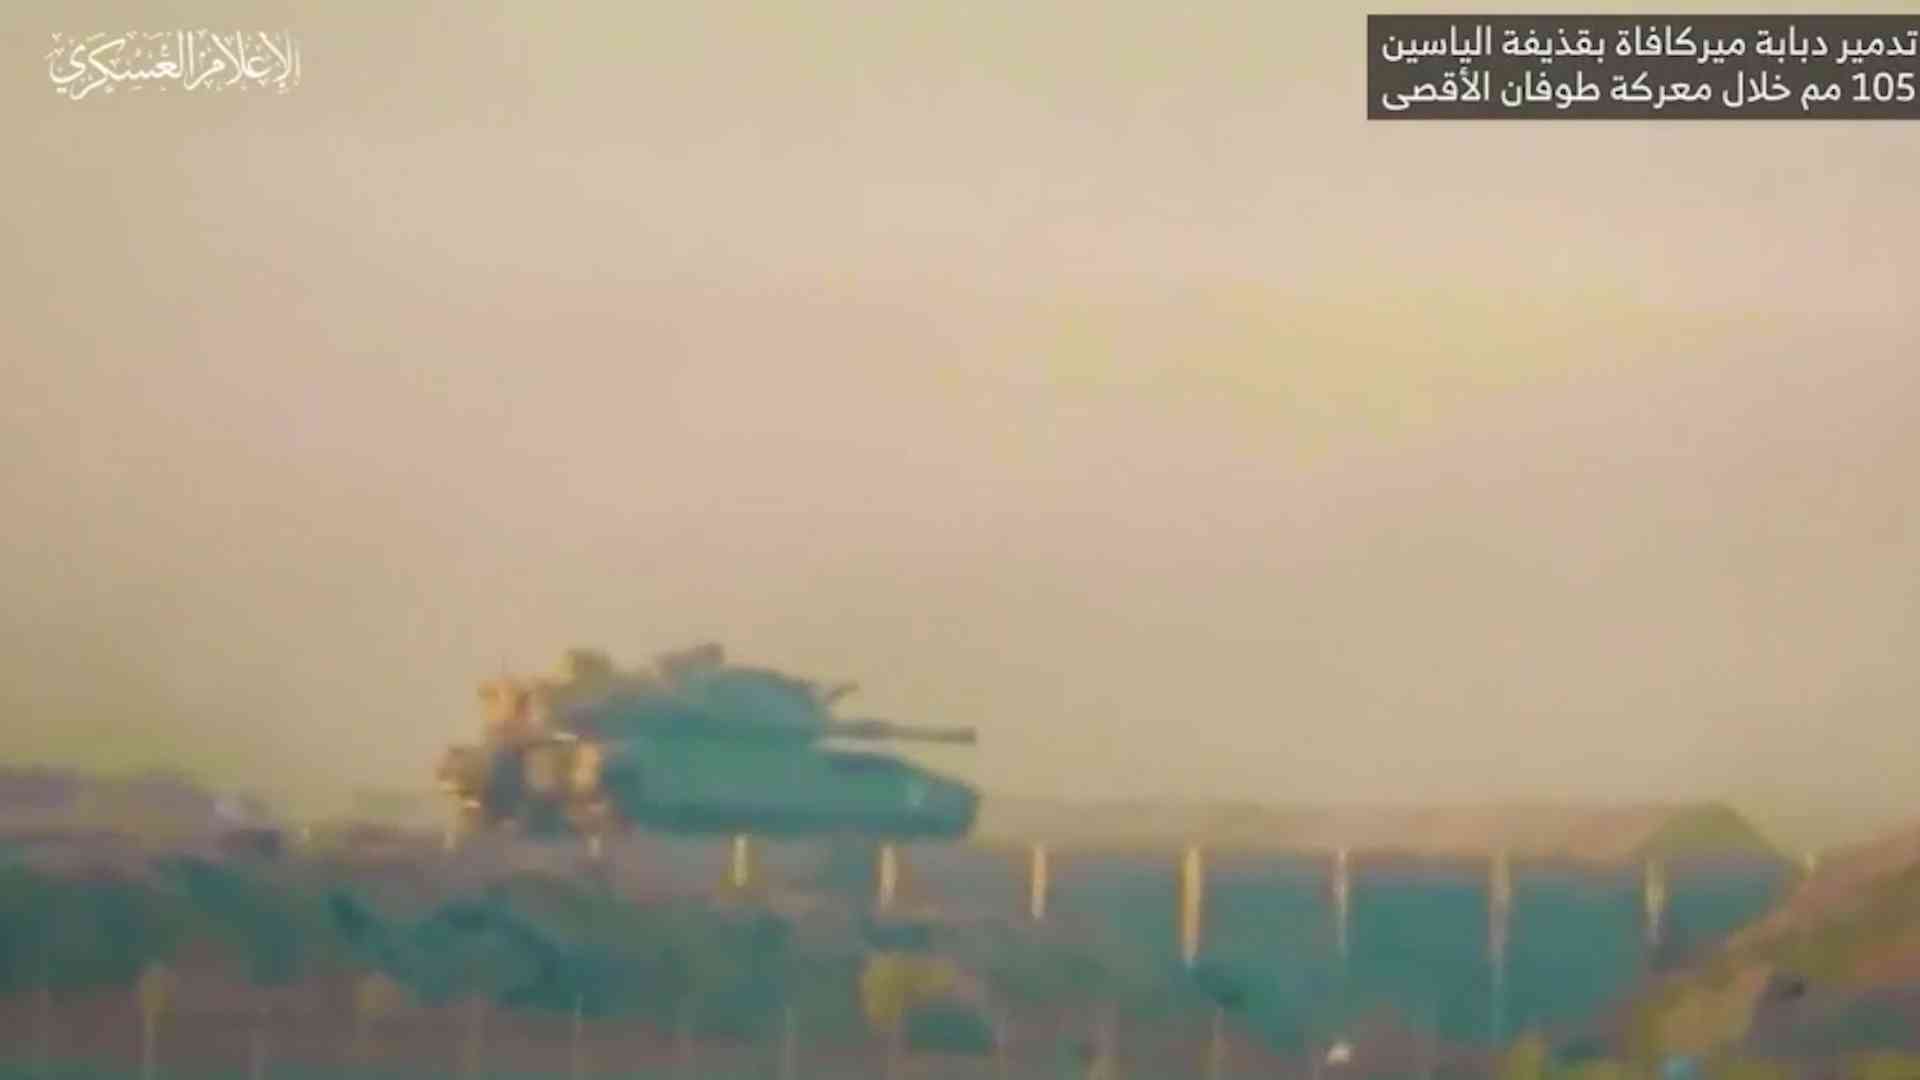 القسام تكشف عن هدية لدبابات الاحتلال (فيديو)